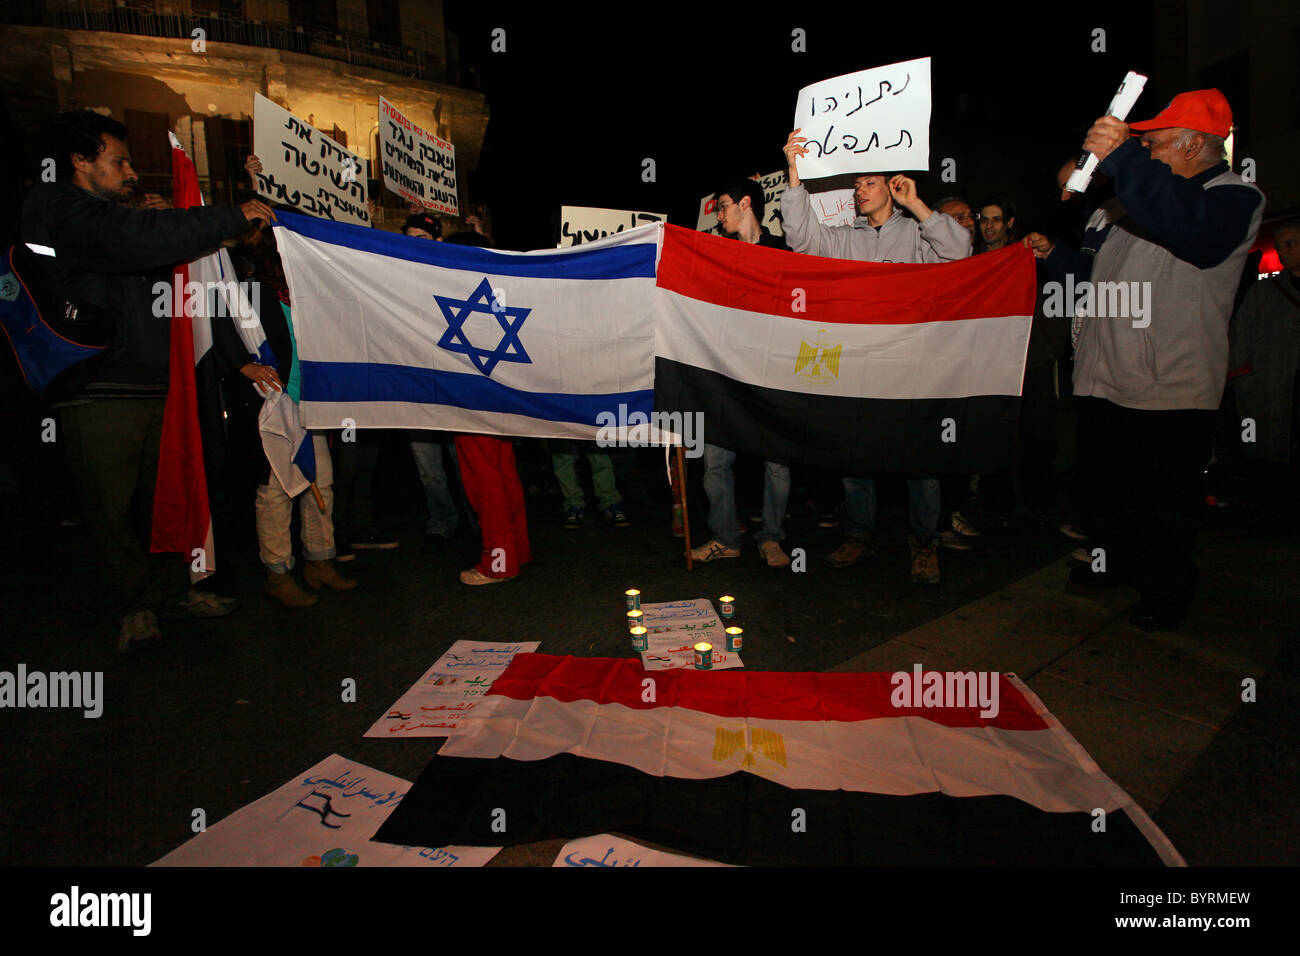 Israelis halten während einer Solidaritätskundgebung mit dem ägyptischen Volk für Demokratie und Freiheit in der Innenstadt von Tel Aviv Israel Transparente hoch, die die interne wirtschaftliche Schwäche kritisieren Stockfoto